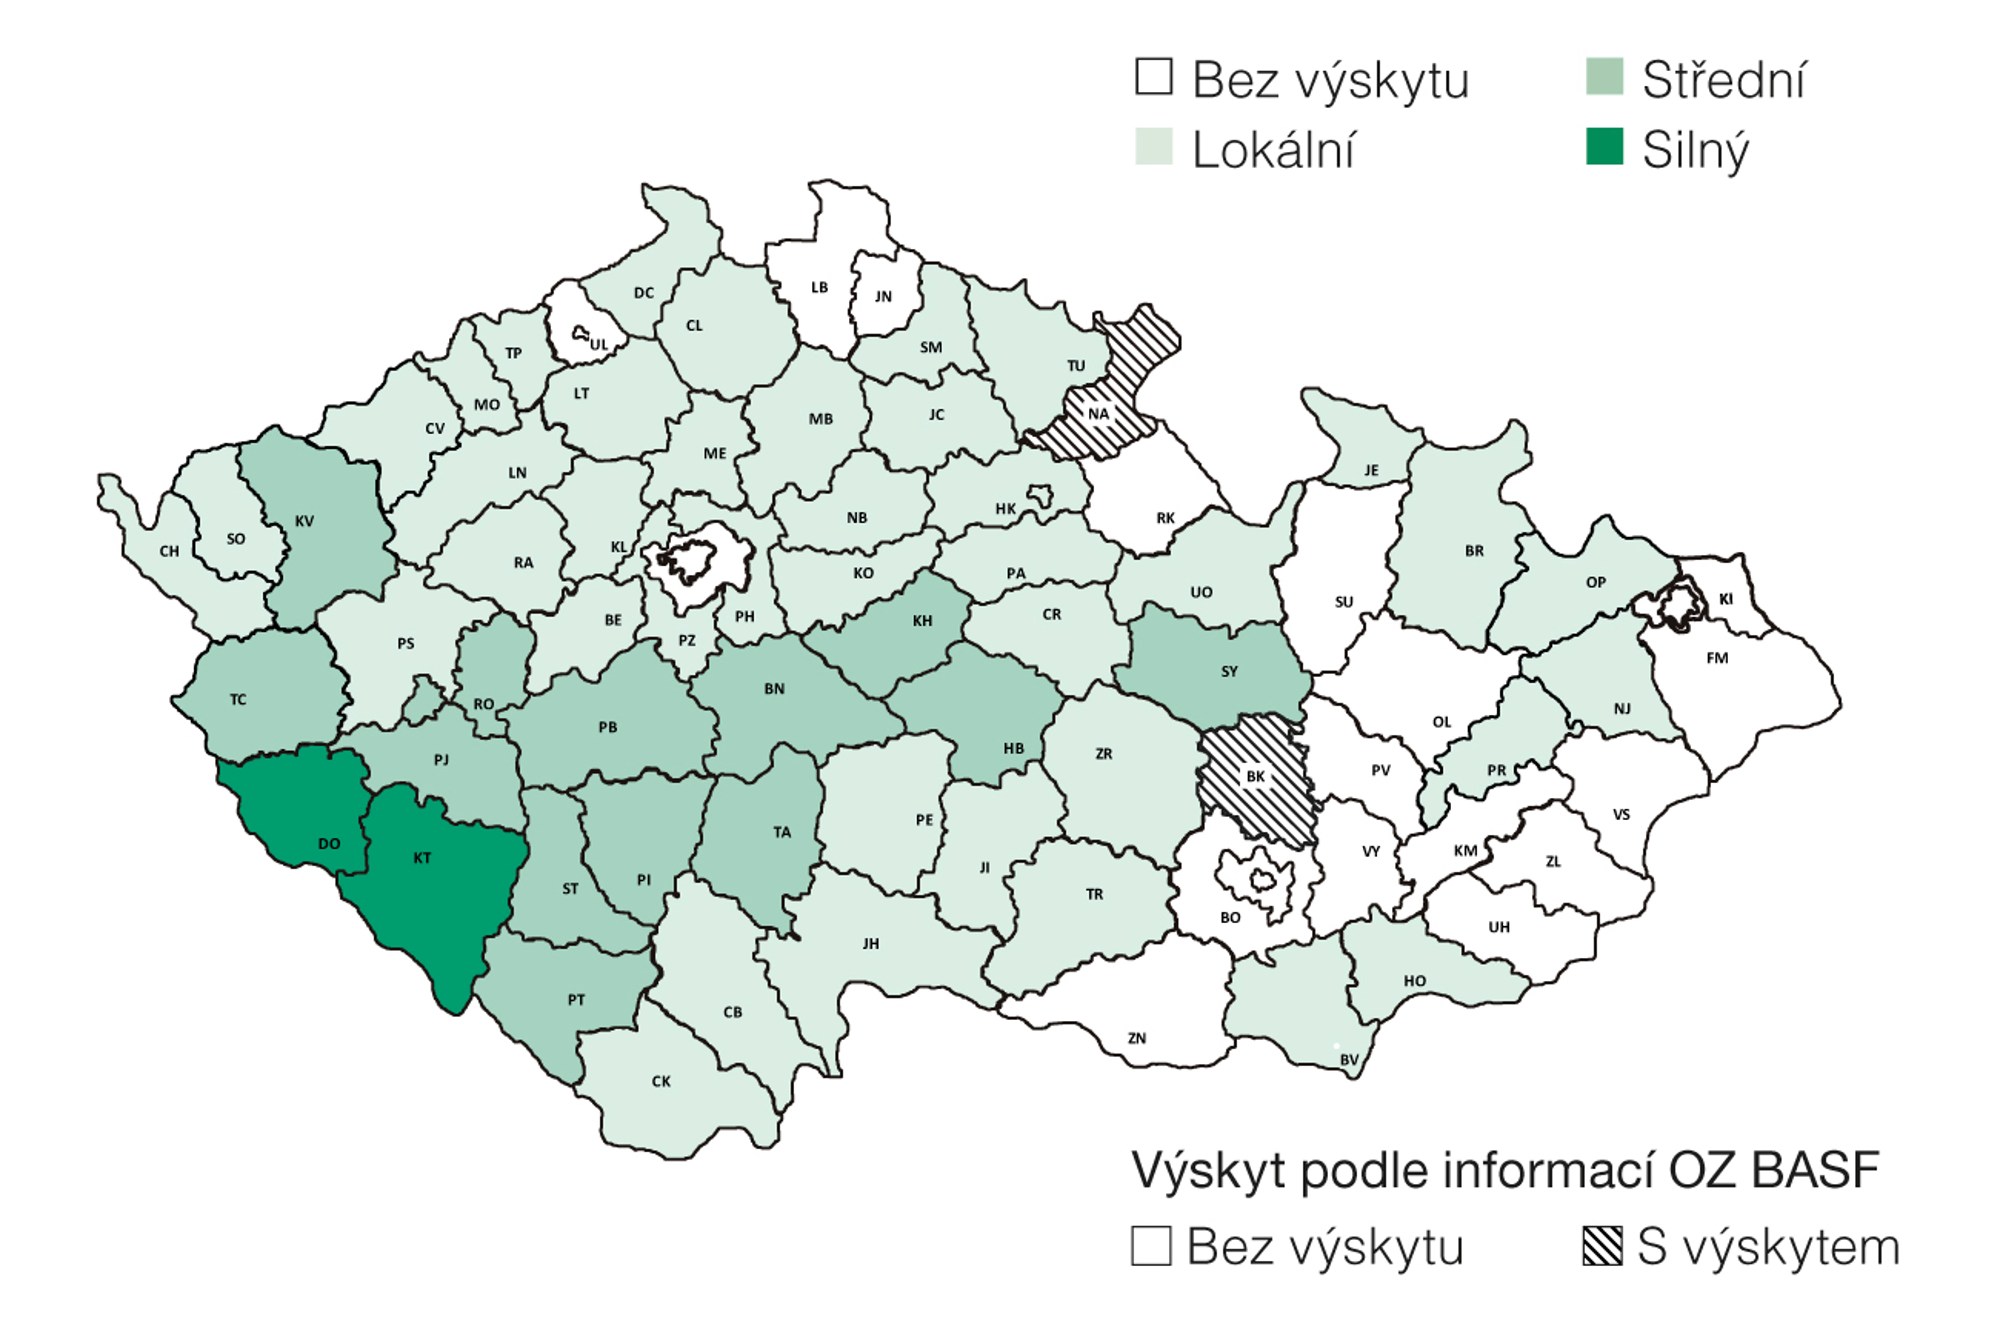 výskyt prliny rolní v ČR, SPZO (2017-2019)